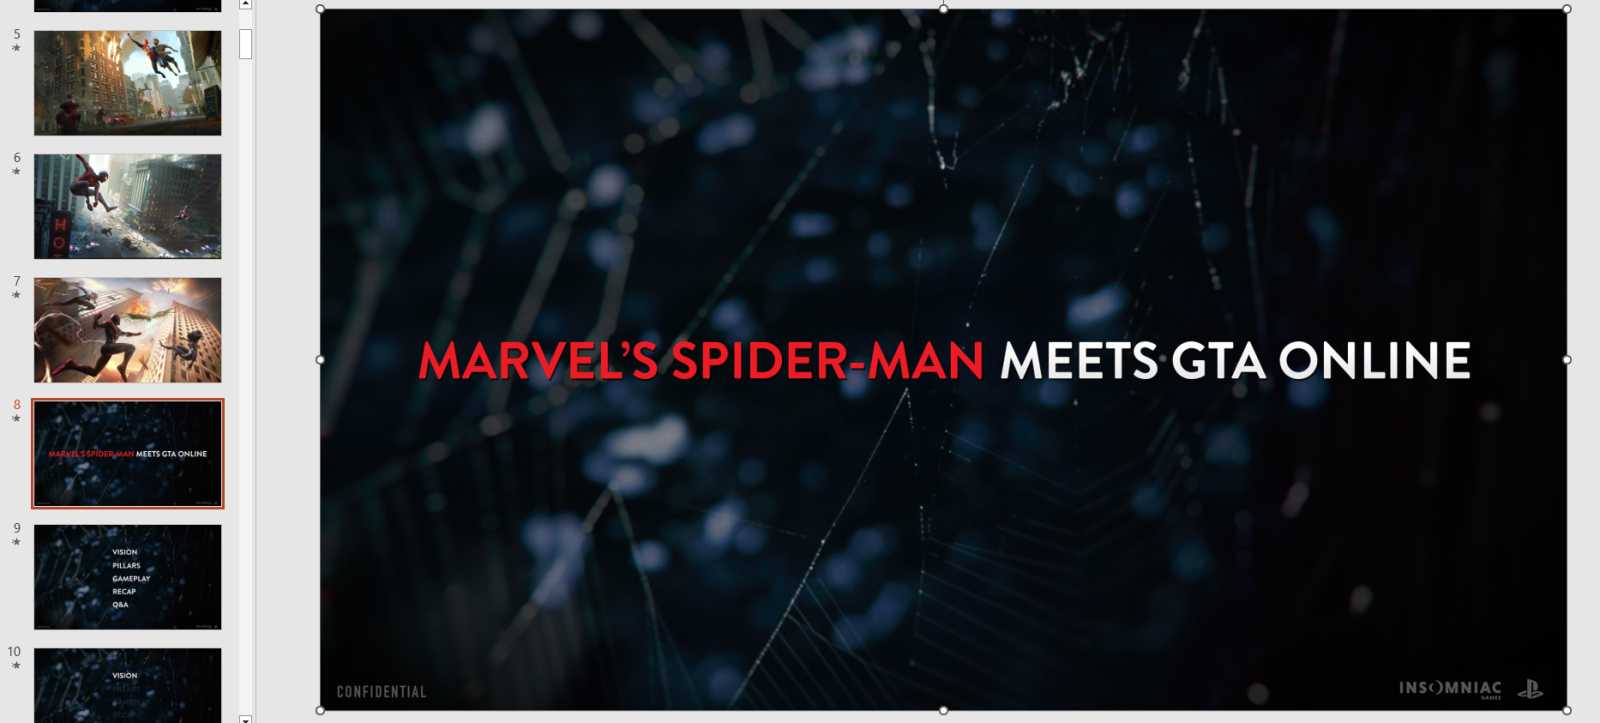 Unikly obrázky ze zrušeného multiplayeru Marvel's Spider-Man